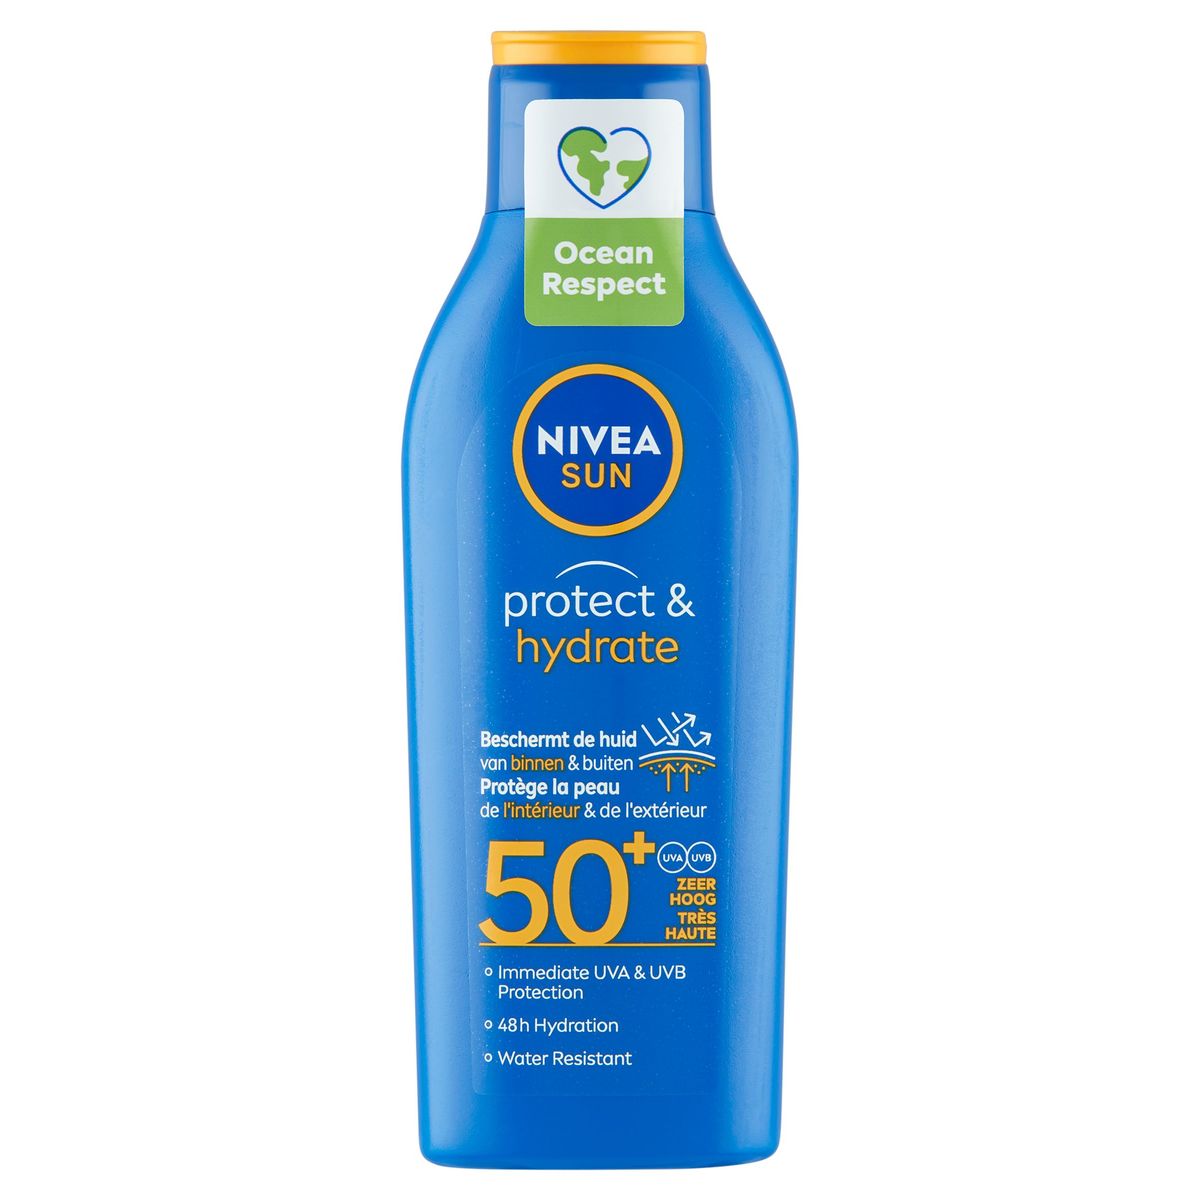 Nivea Sun Protect & Hydrate 50+ Très Haute 200 ml